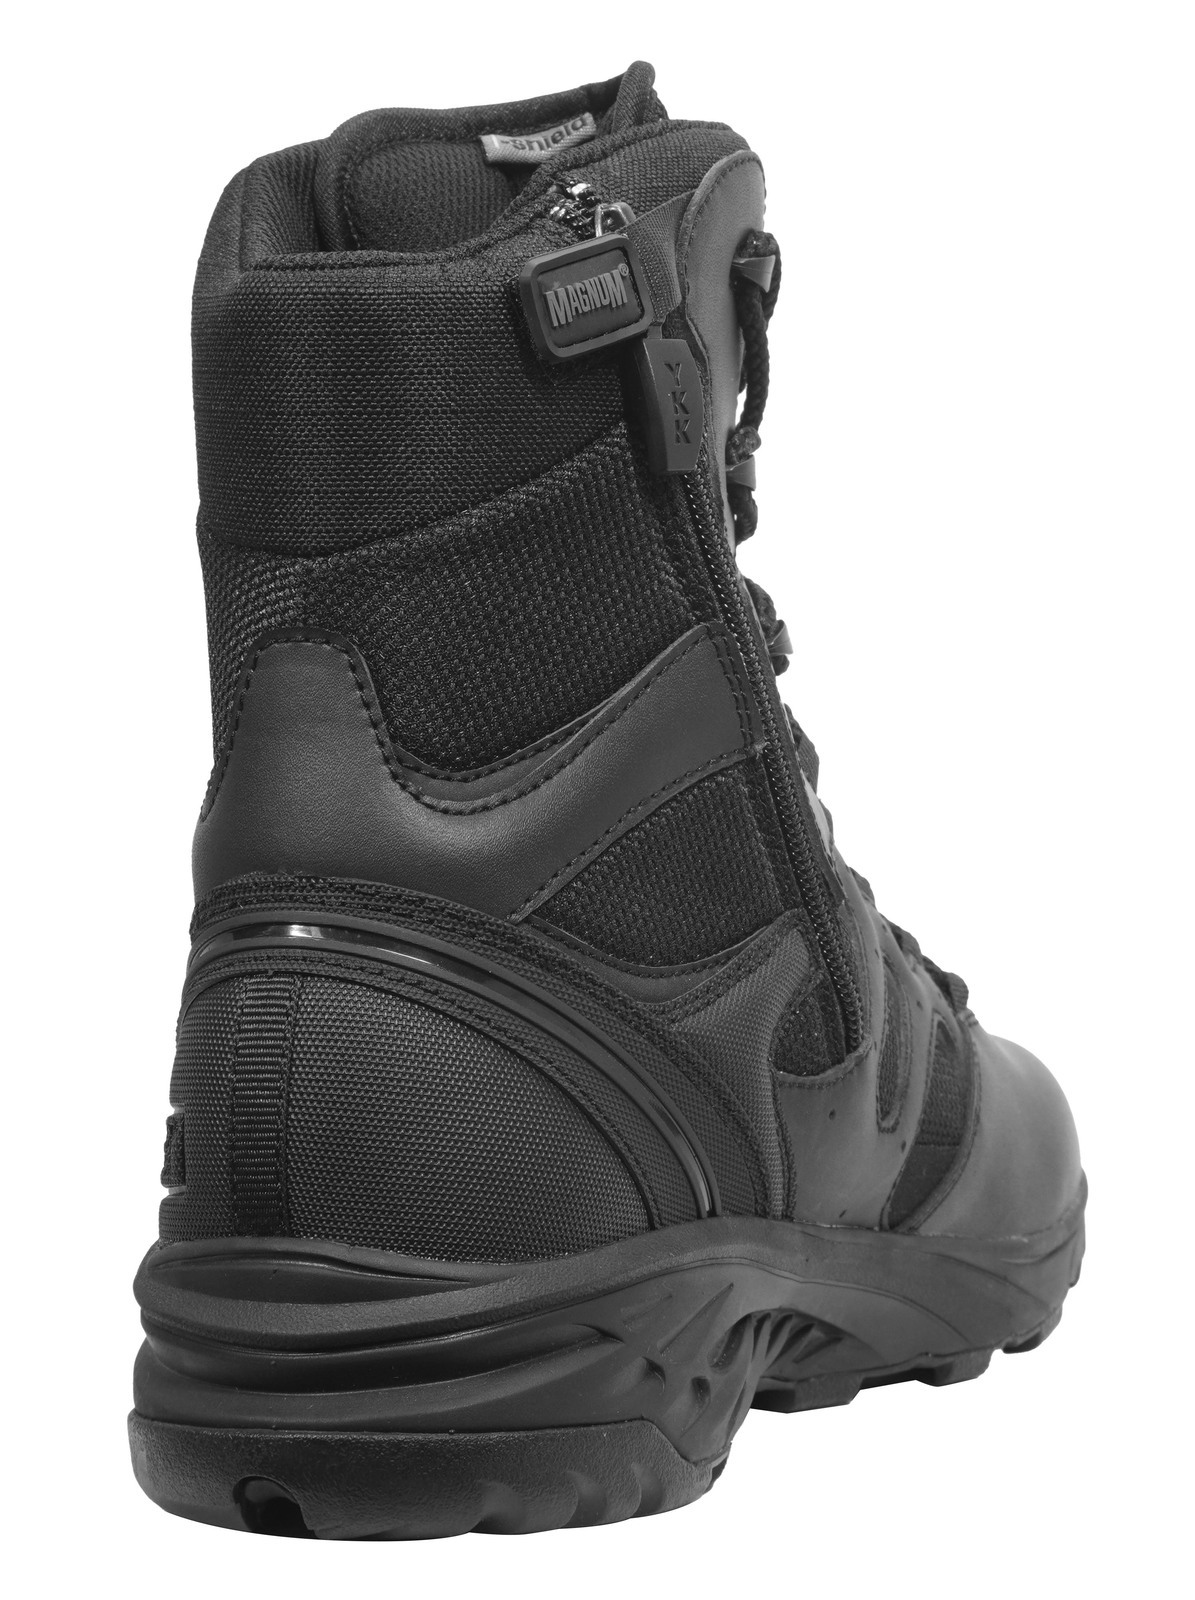 Magnum Wild-Fire Tactical 8.0 SZ Wpi Work Safety Boots Size AU/UK 6 (US 7) Colour Black